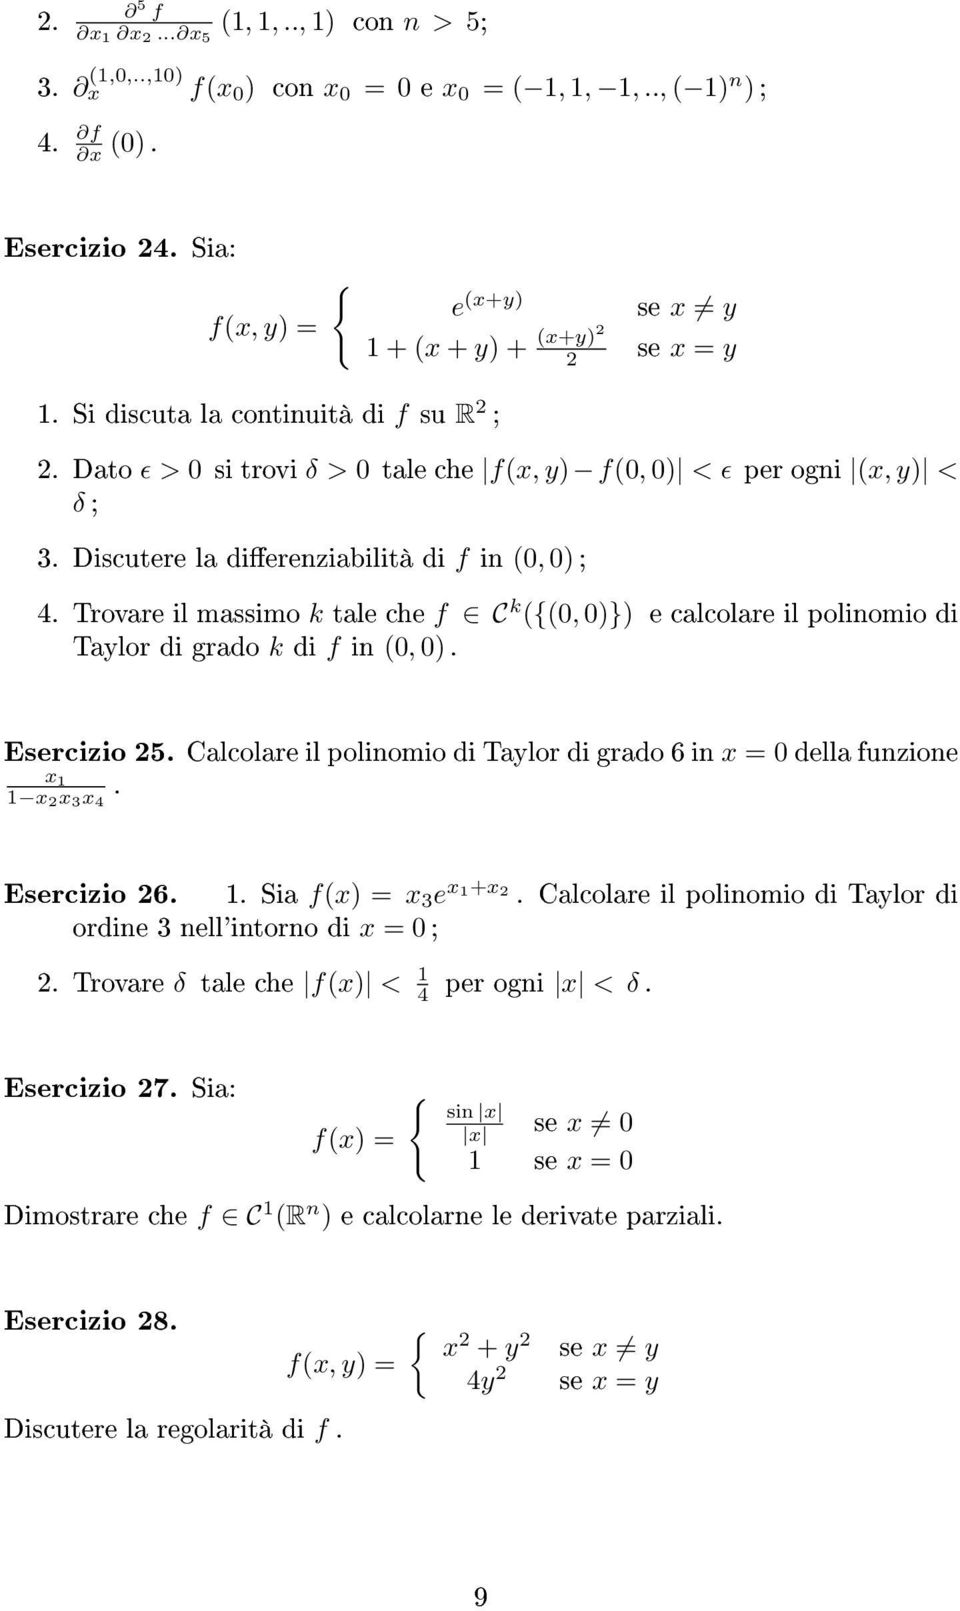 Trovare il massimo k tale che f C k ({(, )}) e calcolare il polinomio di Taylor di grado k di f in (, ). Esercizio 5. Calcolare il polinomio di Taylor di grado 6 in x della funzione x x x 3x 4.